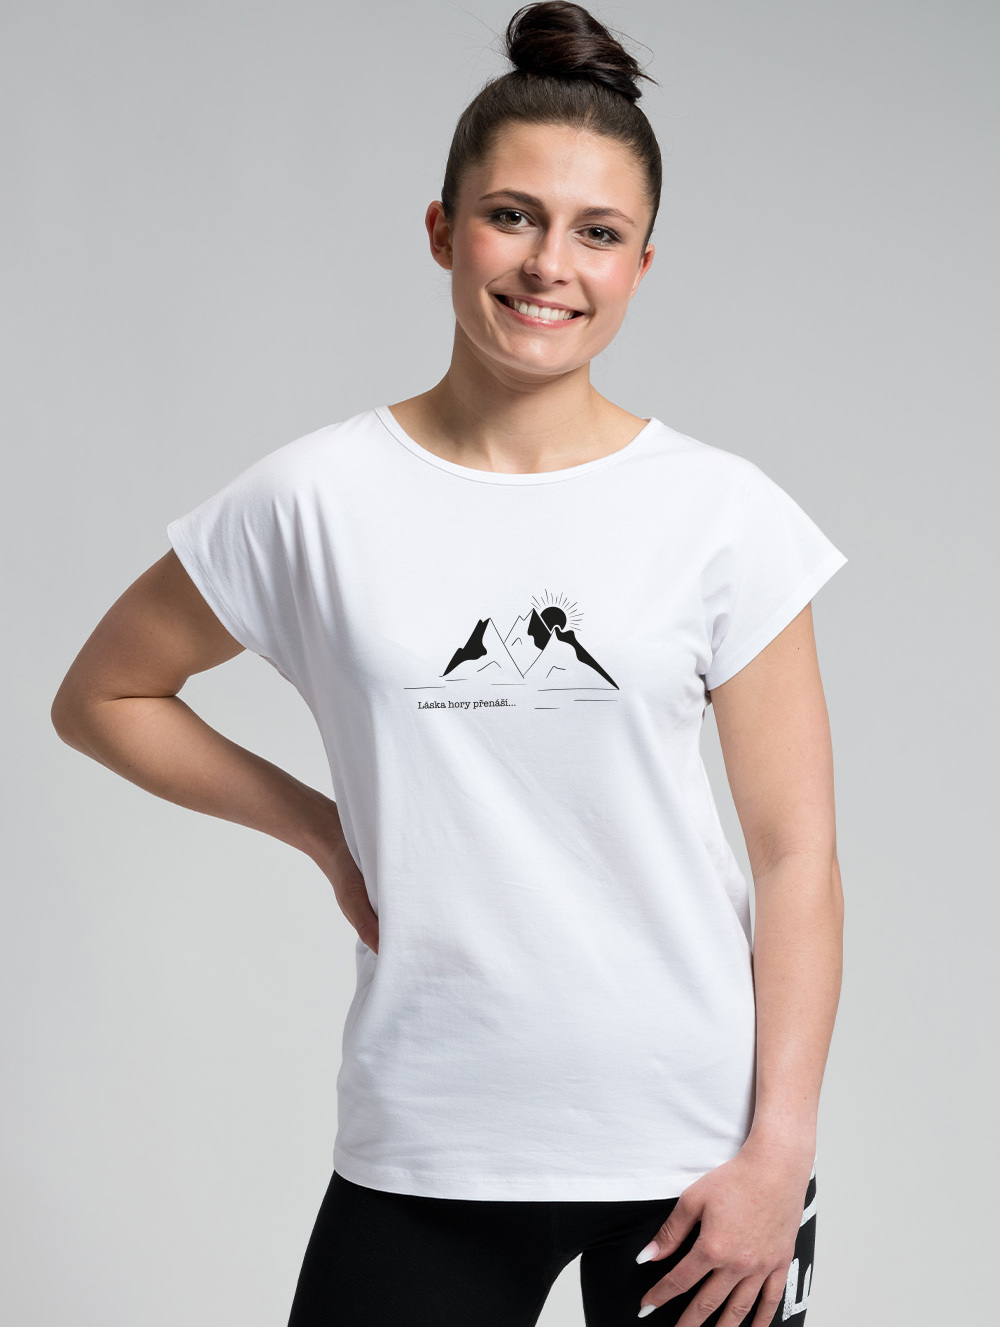 Dámské bavlněné tričko CITYZEN bílé Láska hory přenáší Velikost: XL/44